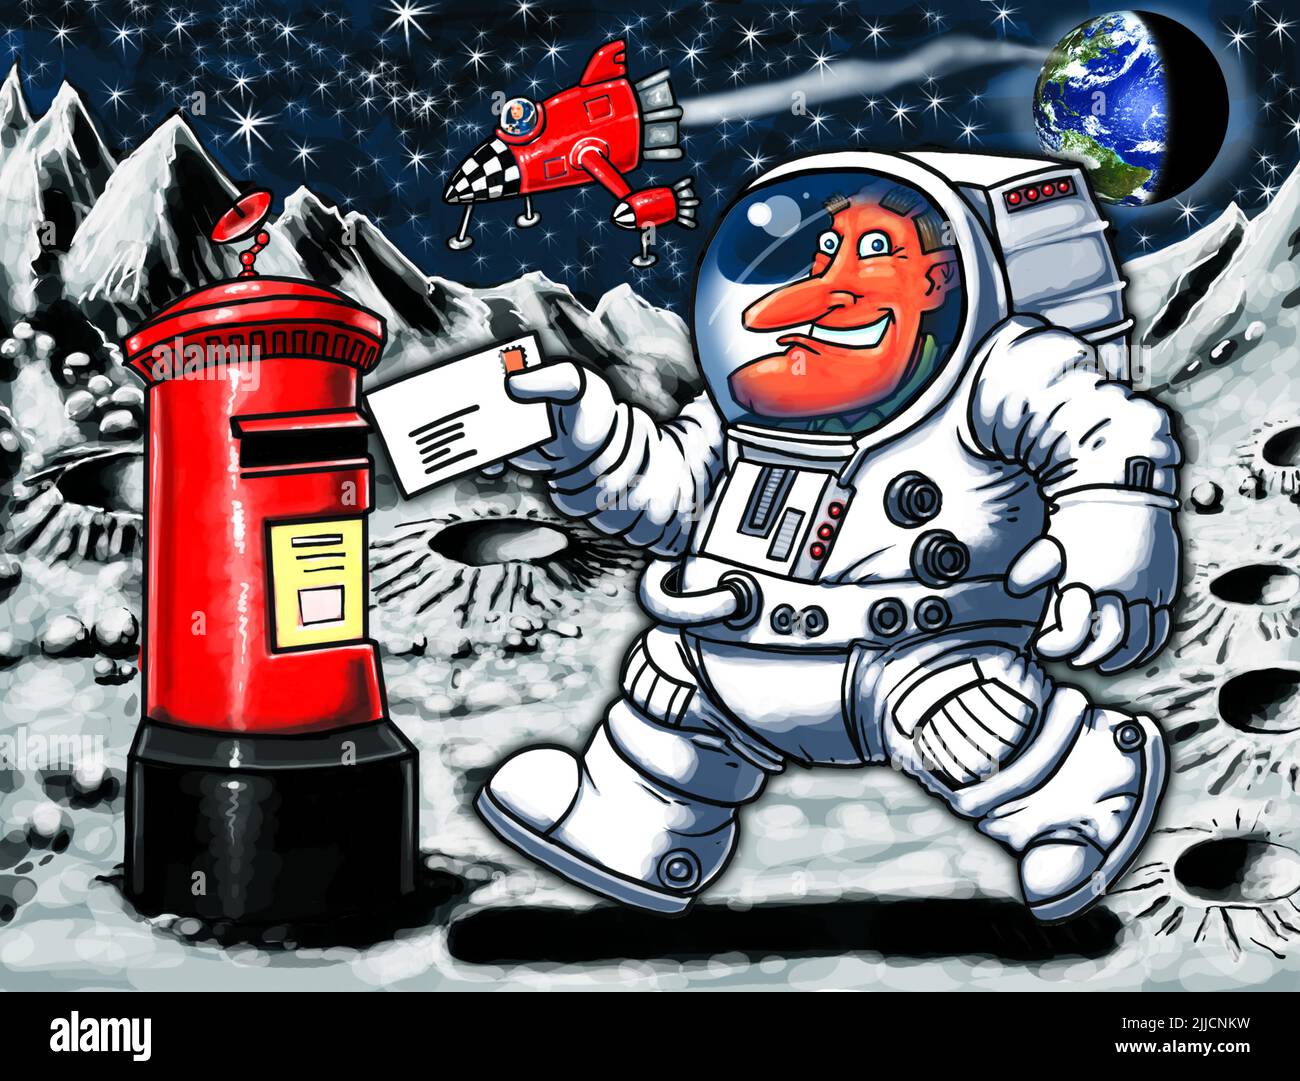 Dessin animé amusant, d'un homme affichant une lettre dans un Royal Mail Box sur la Lune, illustrant l'espace des objets de collection postaux, des FDCS, ou le courrier extrême philatélie. Banque D'Images